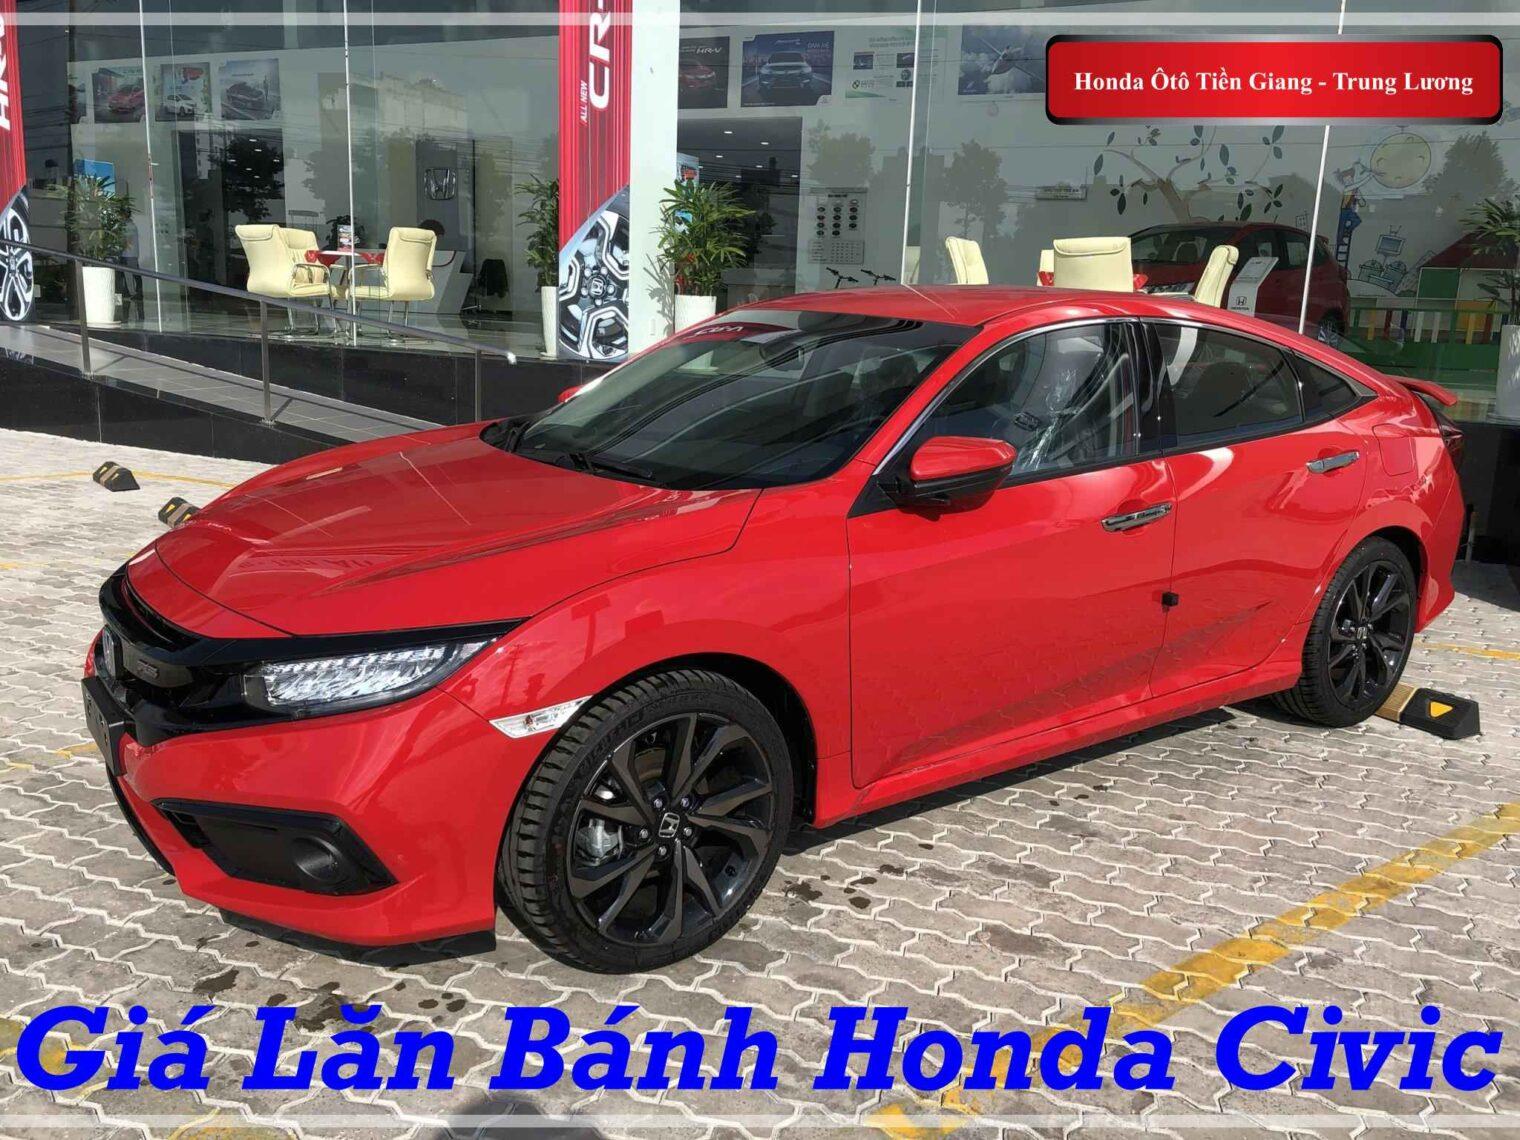 Giá Lăn Bánh Honda Civic 2020 tại Đại Lý Honda Ô tô Tiền Giang